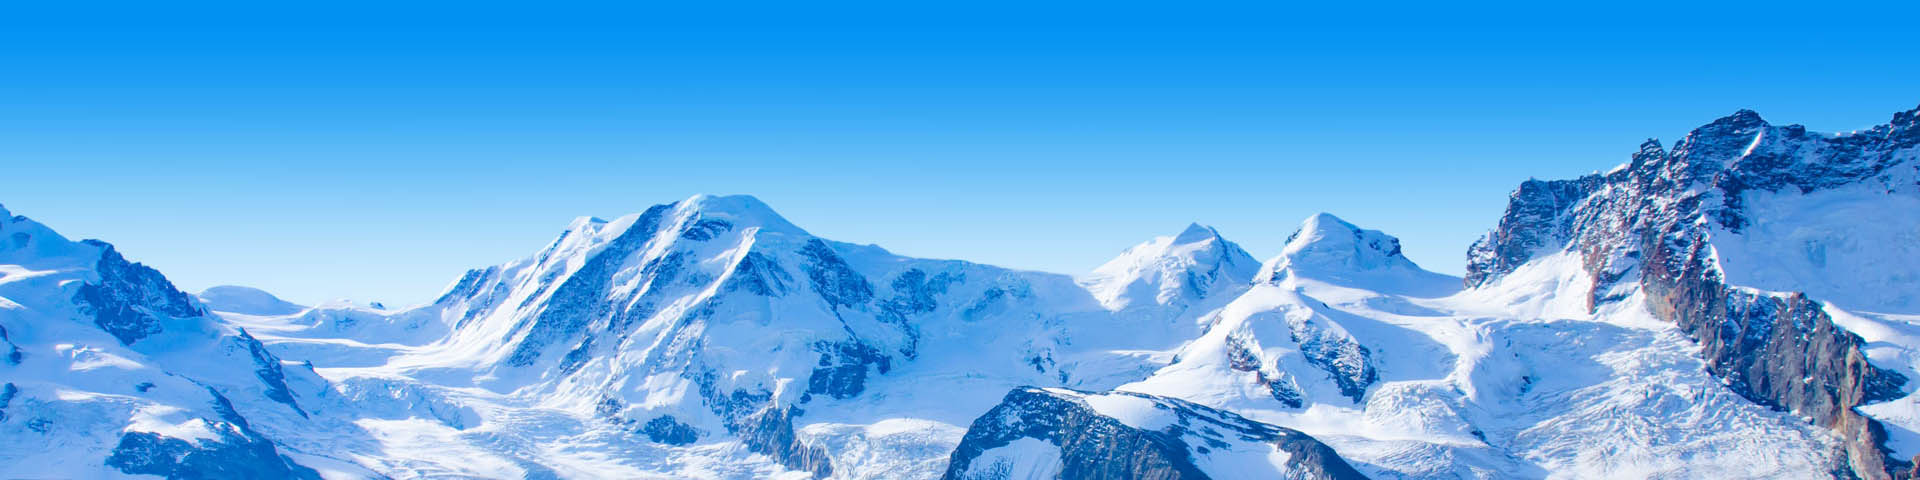 Prachtig landschap in Zwitserland met besneeuwde bergen.